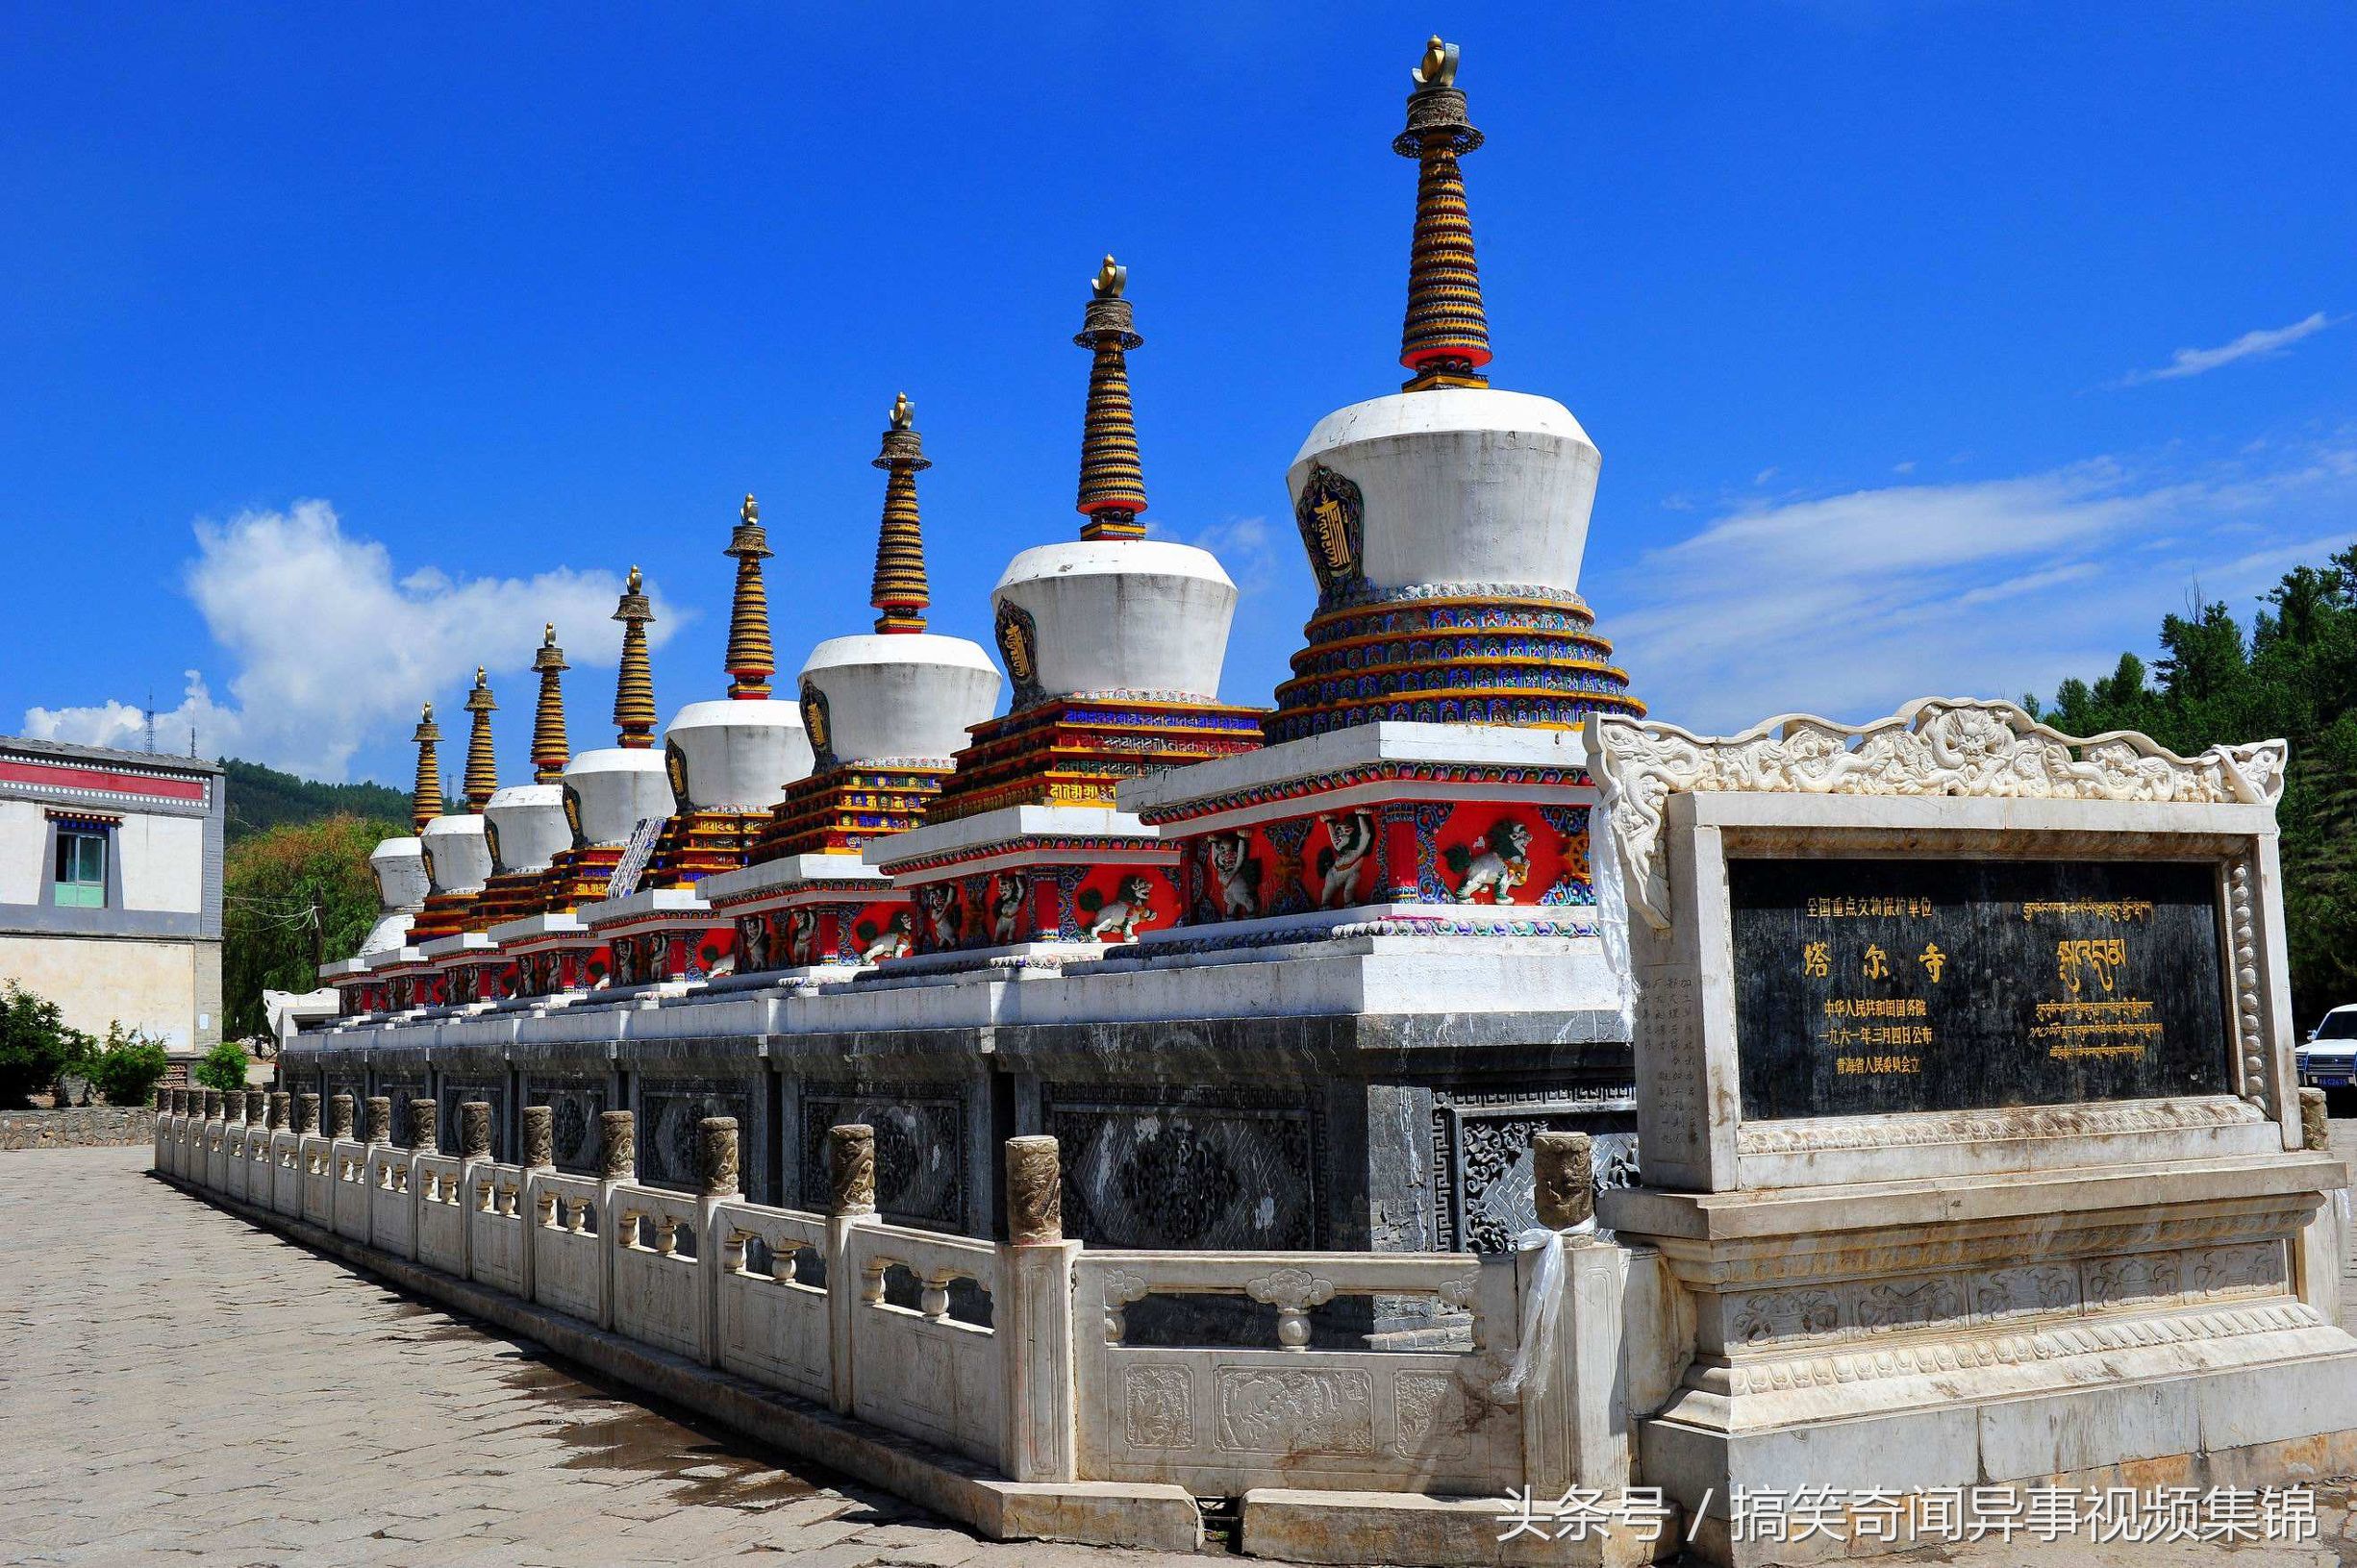 大美青海,中国藏传佛教格鲁派(黄教)六大寺院之一——塔尔寺